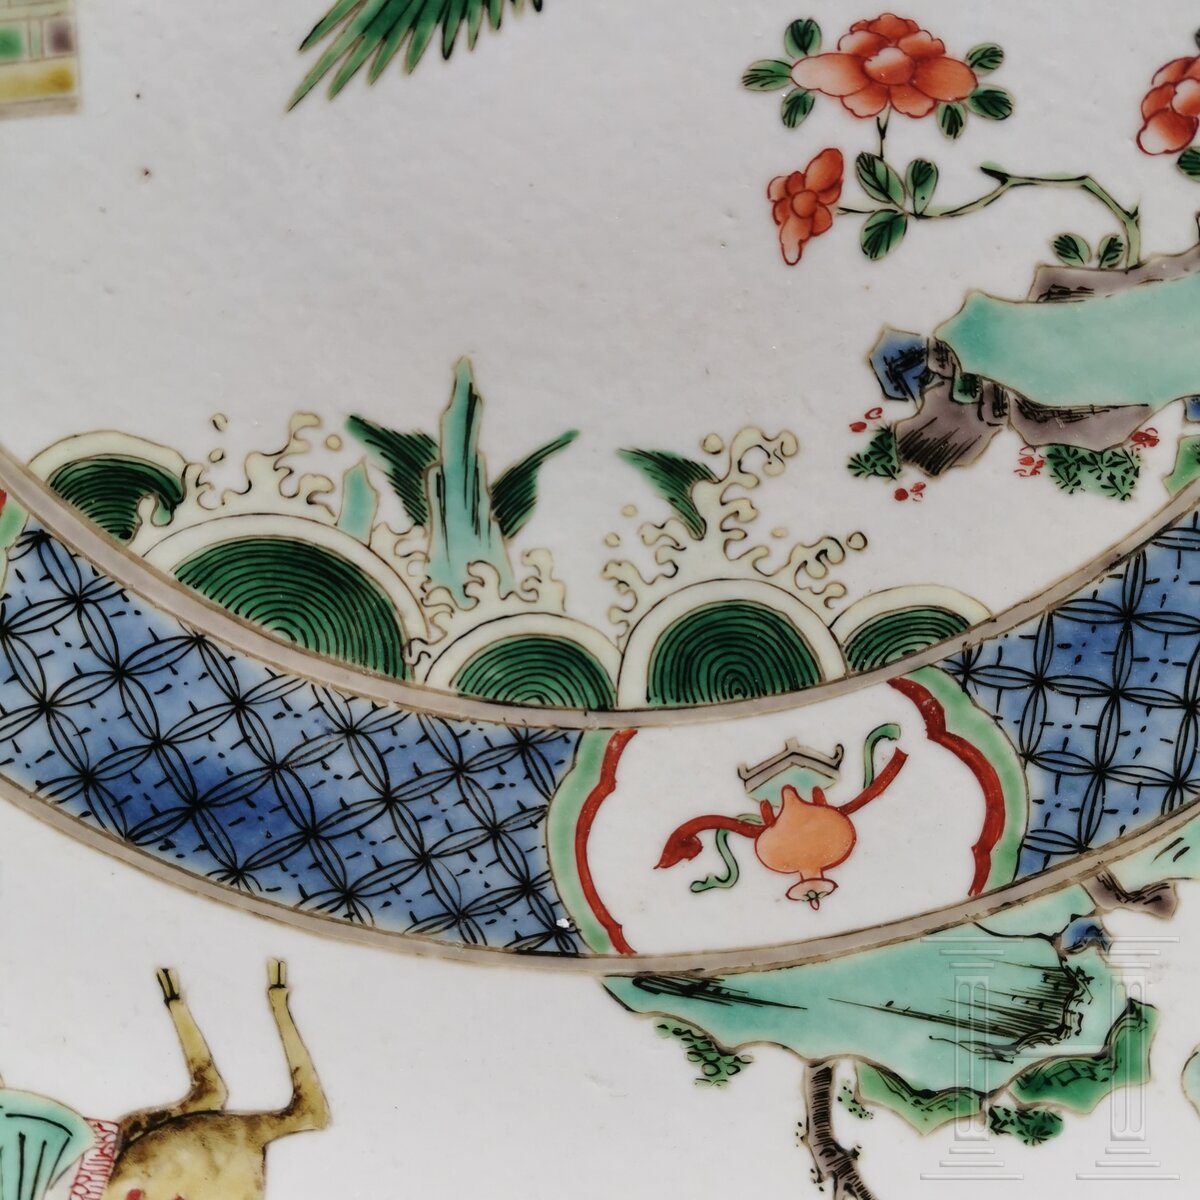 Zwei große Famille-verte-Teller mit figürlichem Dekor, China, wohl Kangxi-Periode (18. Jhdt.) - Image 35 of 41